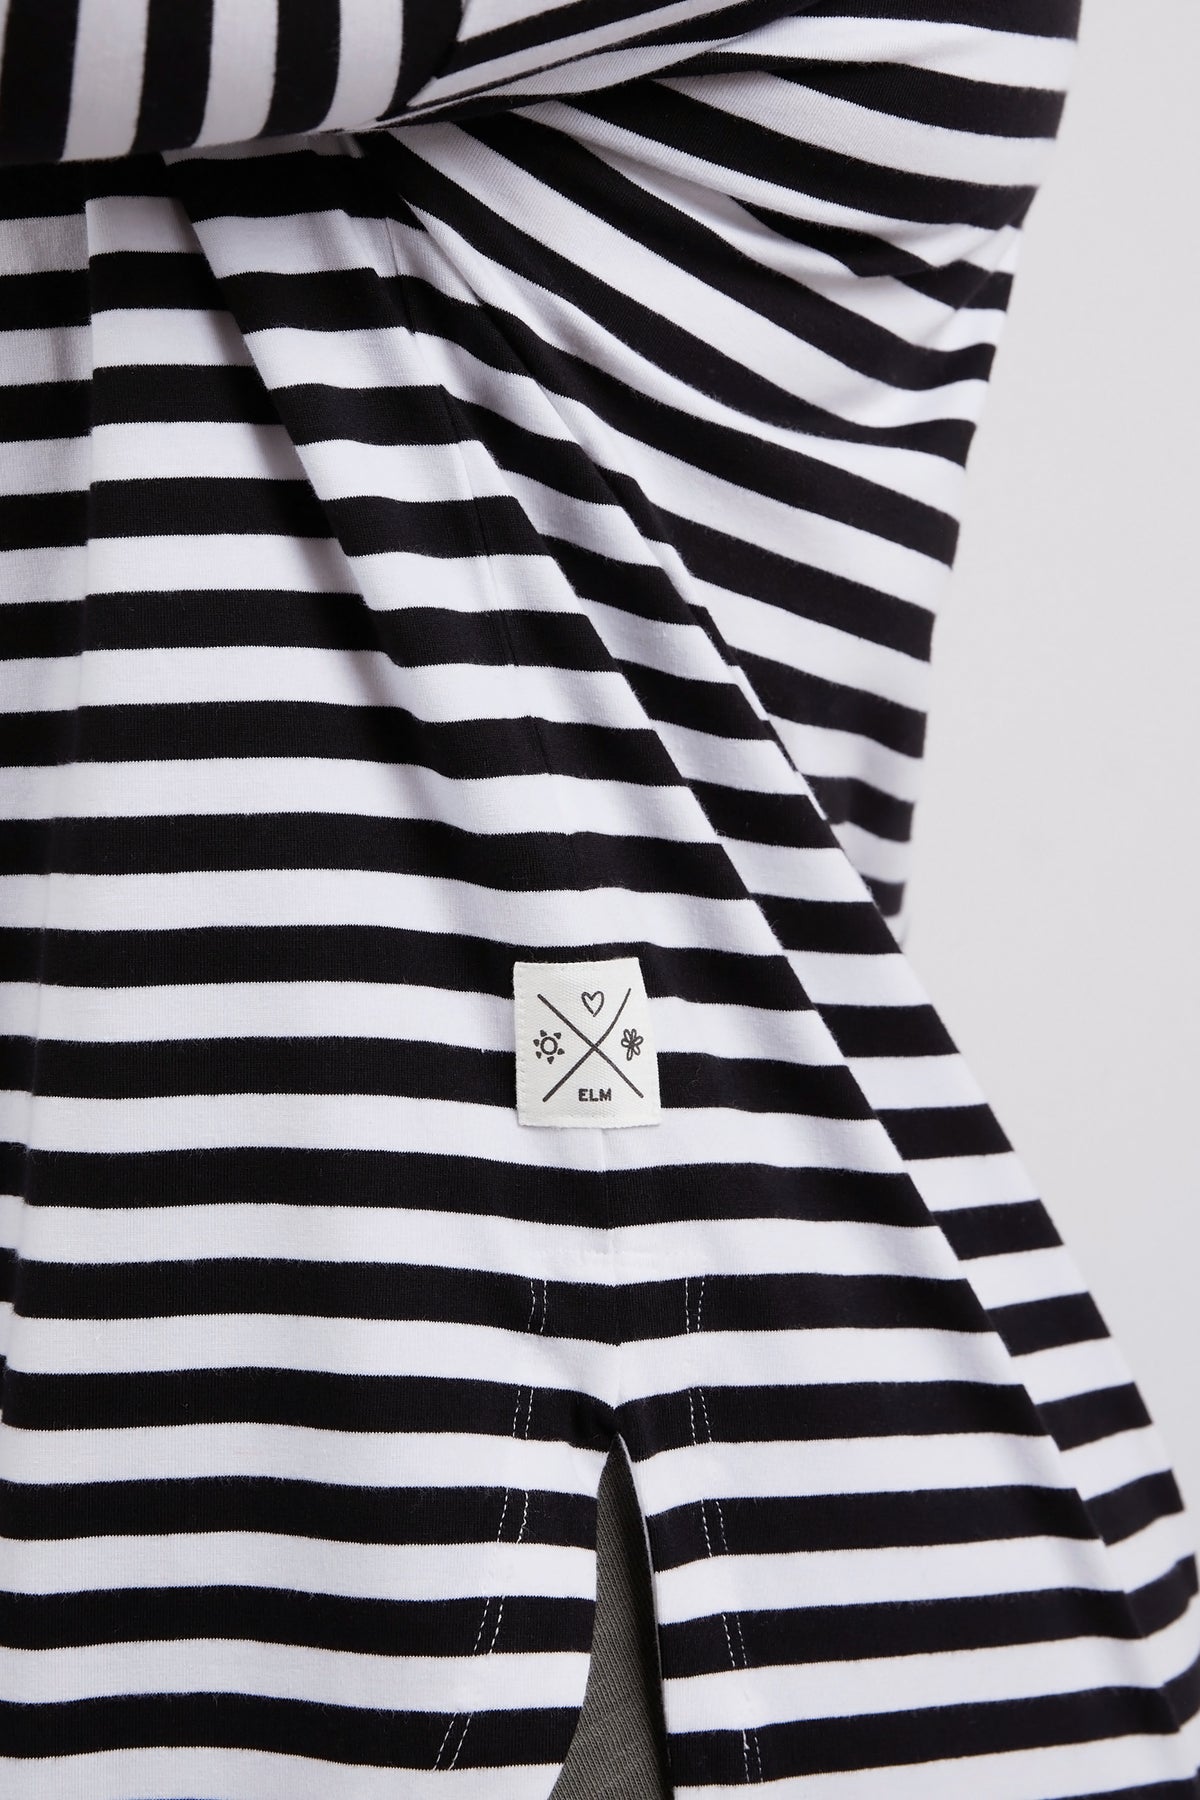 Lauren Long Sleeve Black & White Stripe